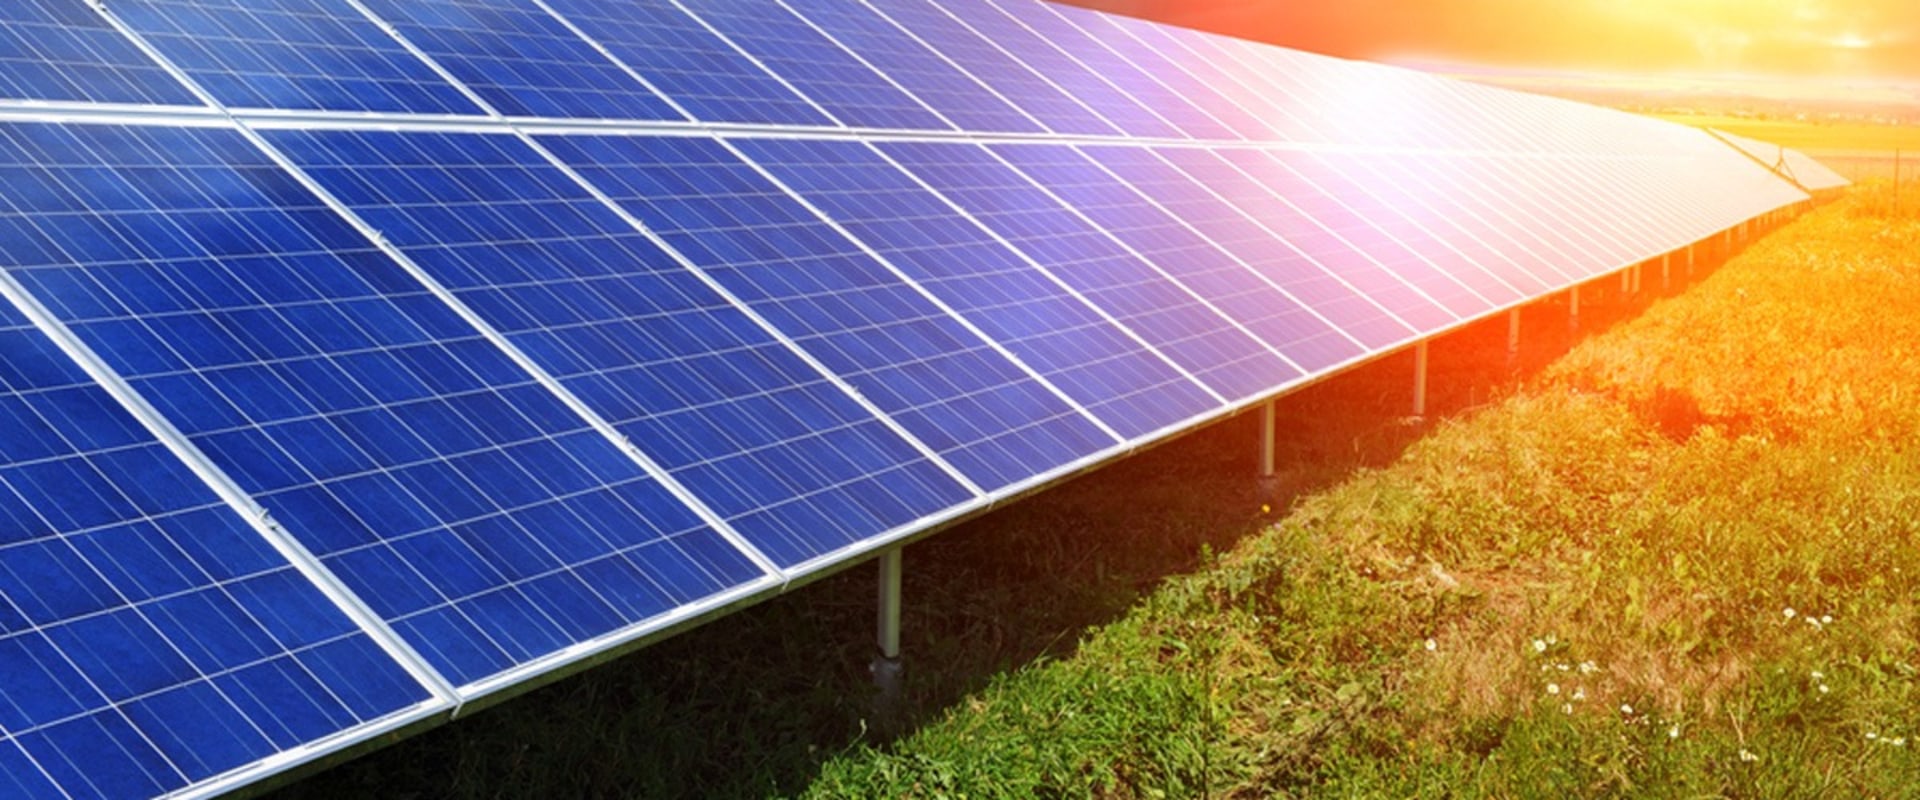 How is solar power produced?